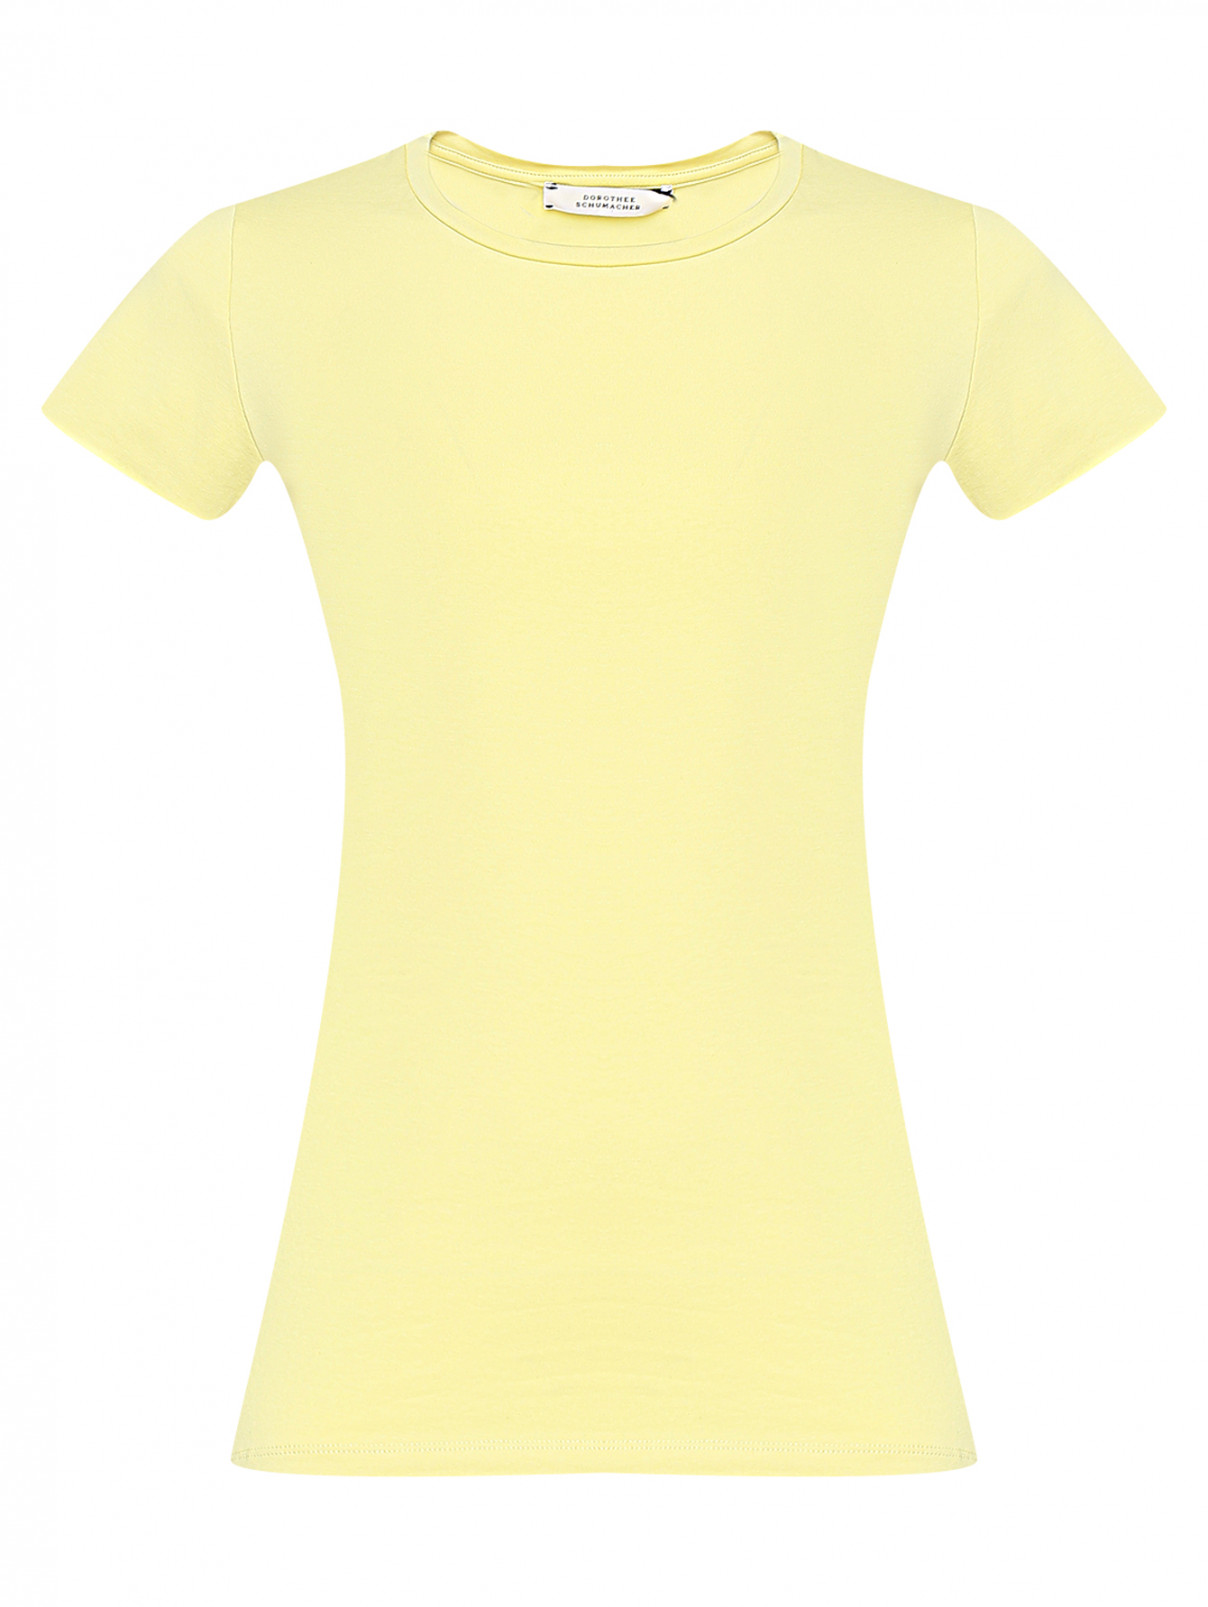 Базовая футболка из хлопка Dorothee Schumacher  –  Общий вид  – Цвет:  Желтый